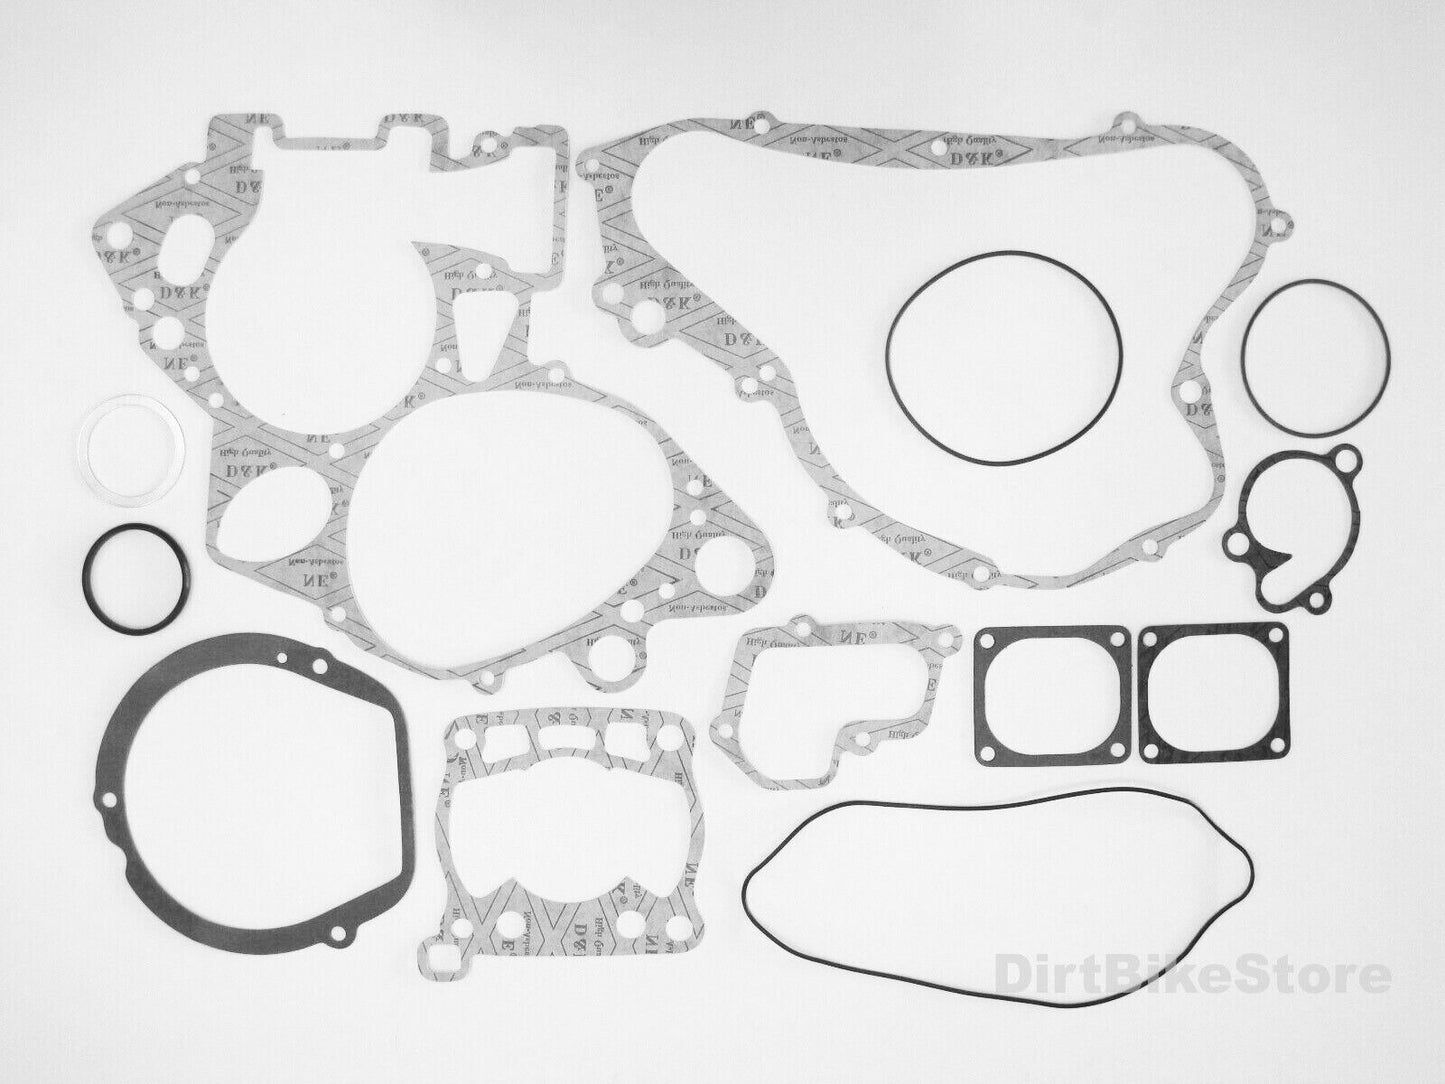 Suzuki RM 125 (1992-1997) Engine Rebuild Kit, Main Bearings, Gasket Set & Seals